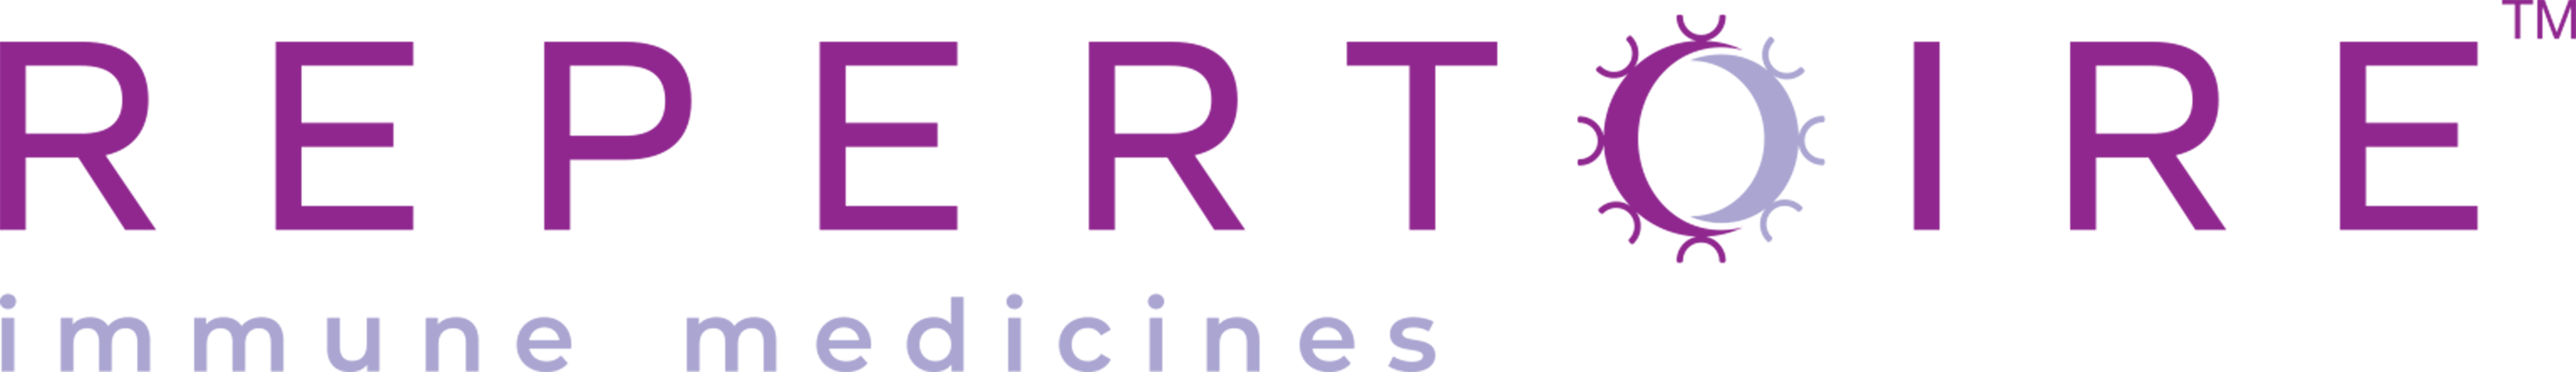 Vision Fund investment portfolio company Repertoire Immune Medicines's logo